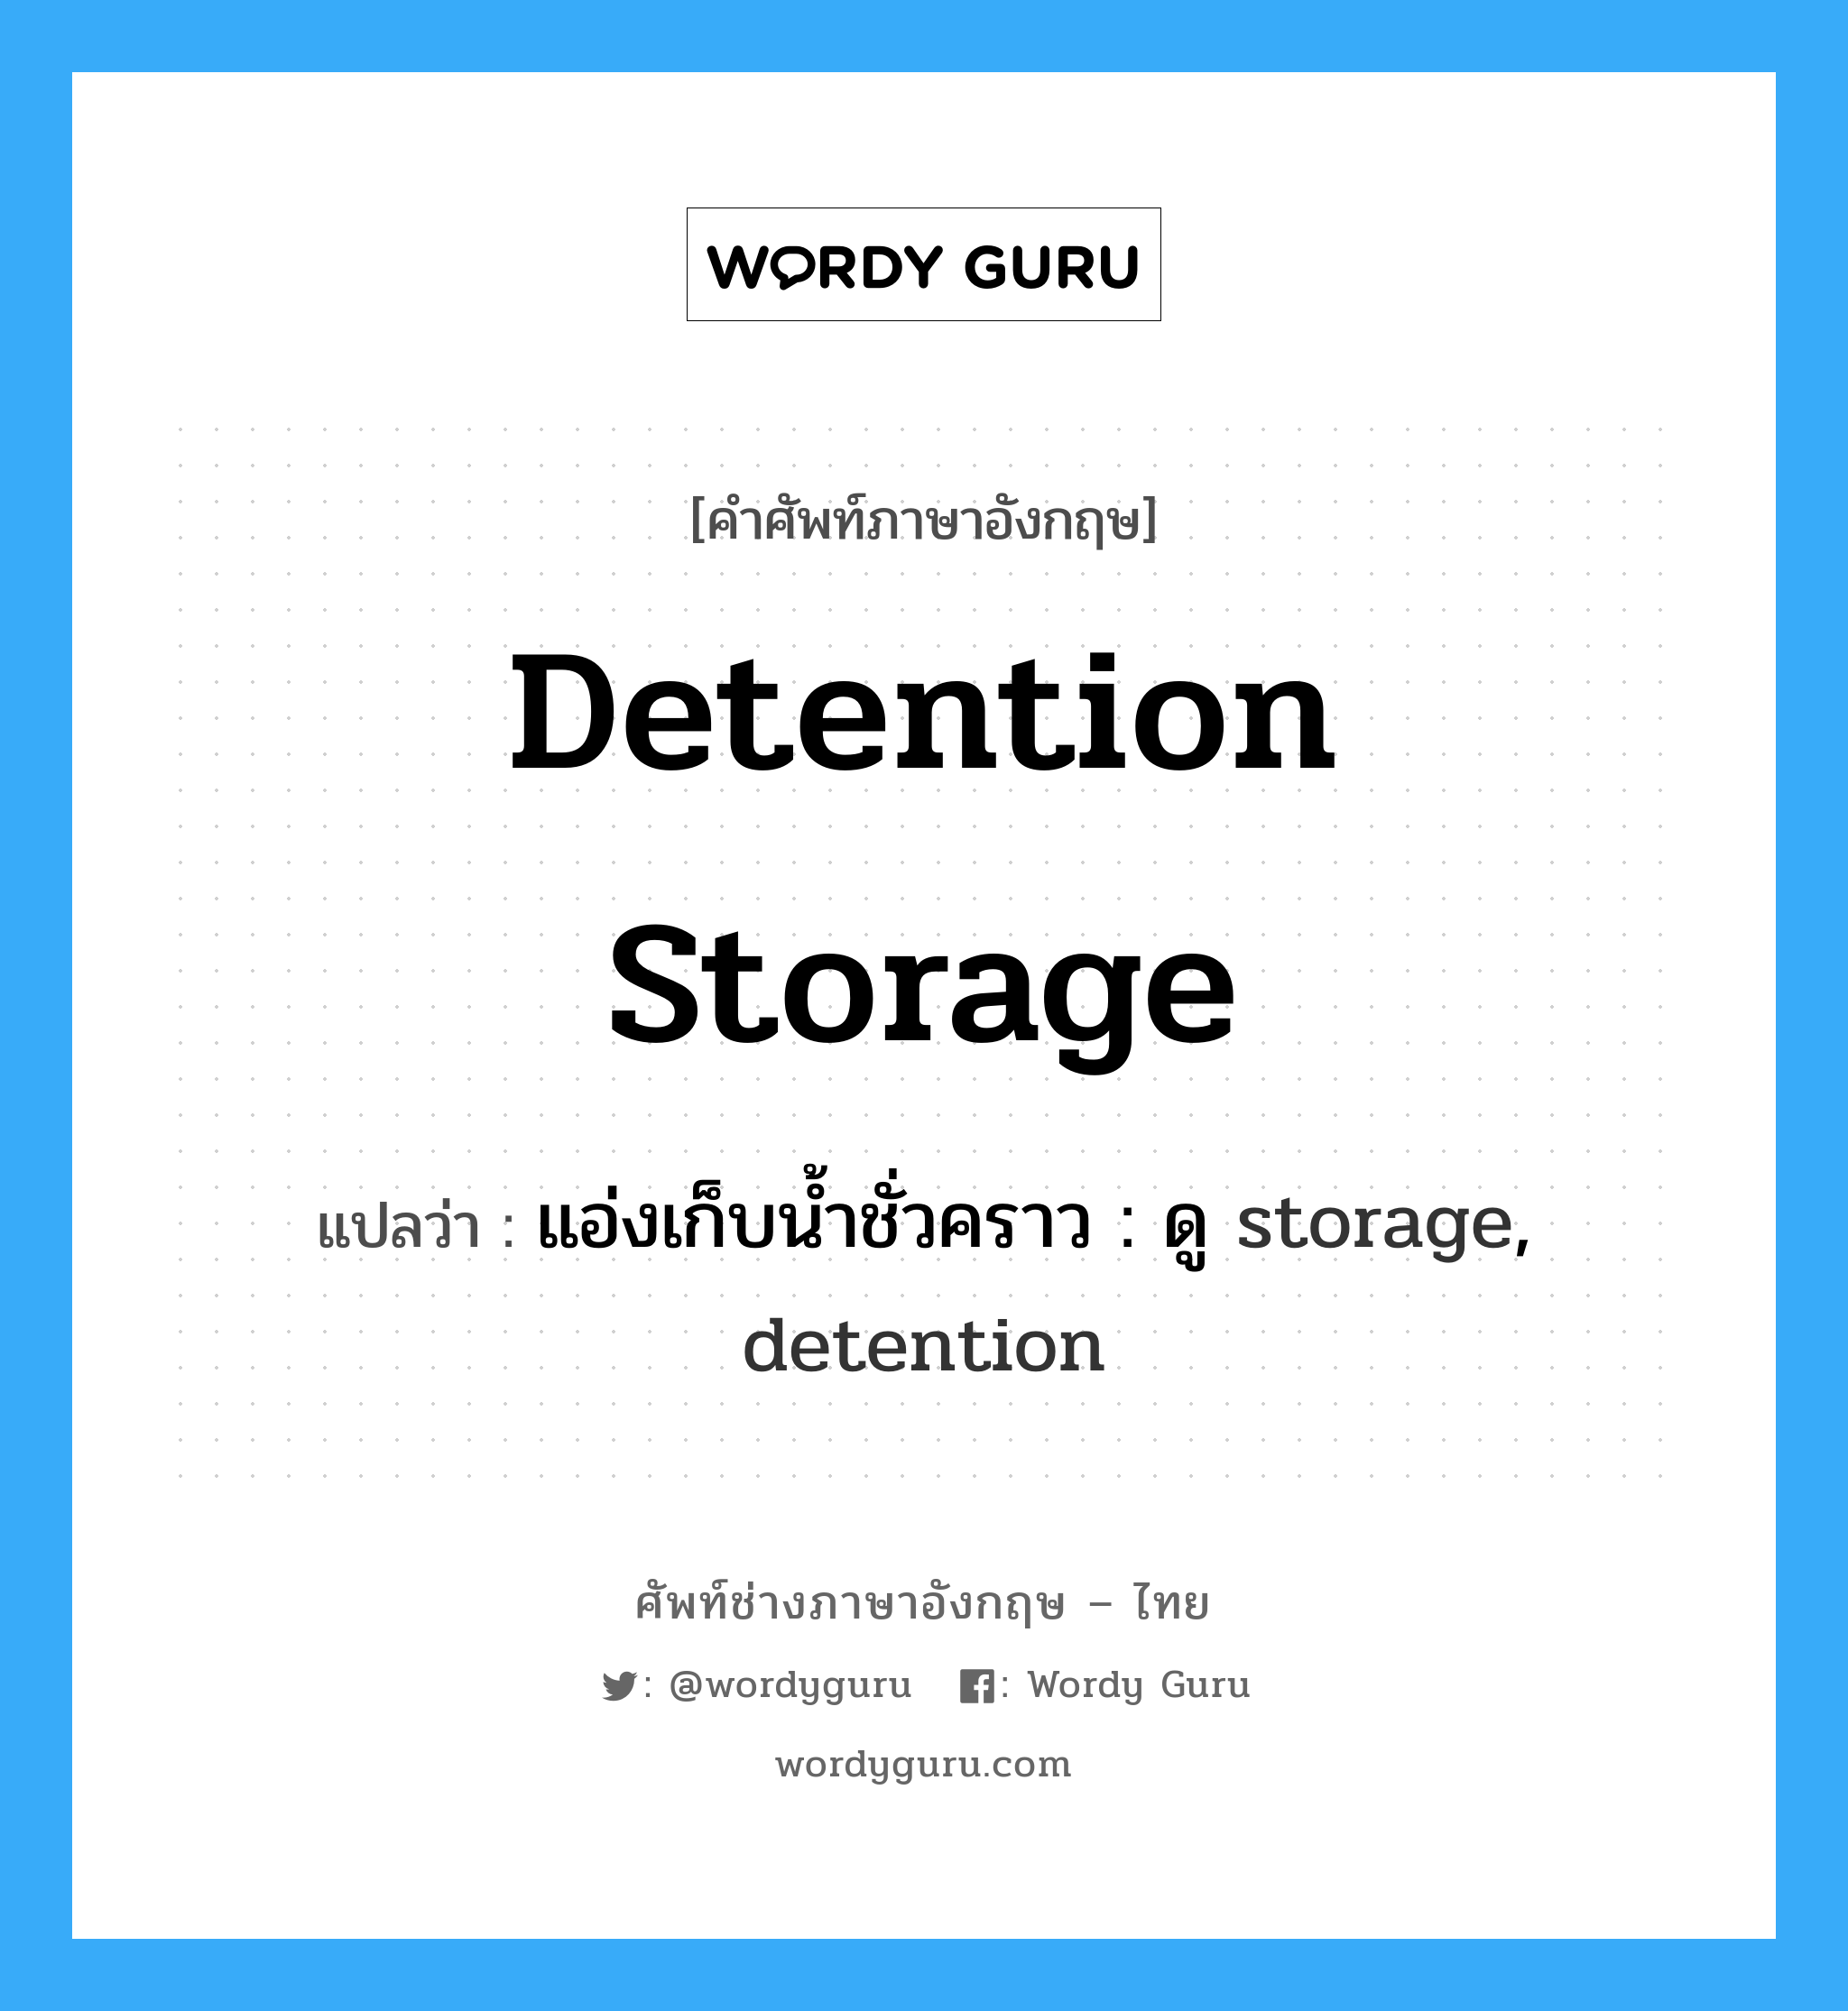 แอ่งเก็บน้ำชั่วคราว : ดู storage, detention ภาษาอังกฤษ?, คำศัพท์ช่างภาษาอังกฤษ - ไทย แอ่งเก็บน้ำชั่วคราว : ดู storage, detention คำศัพท์ภาษาอังกฤษ แอ่งเก็บน้ำชั่วคราว : ดู storage, detention แปลว่า detention storage